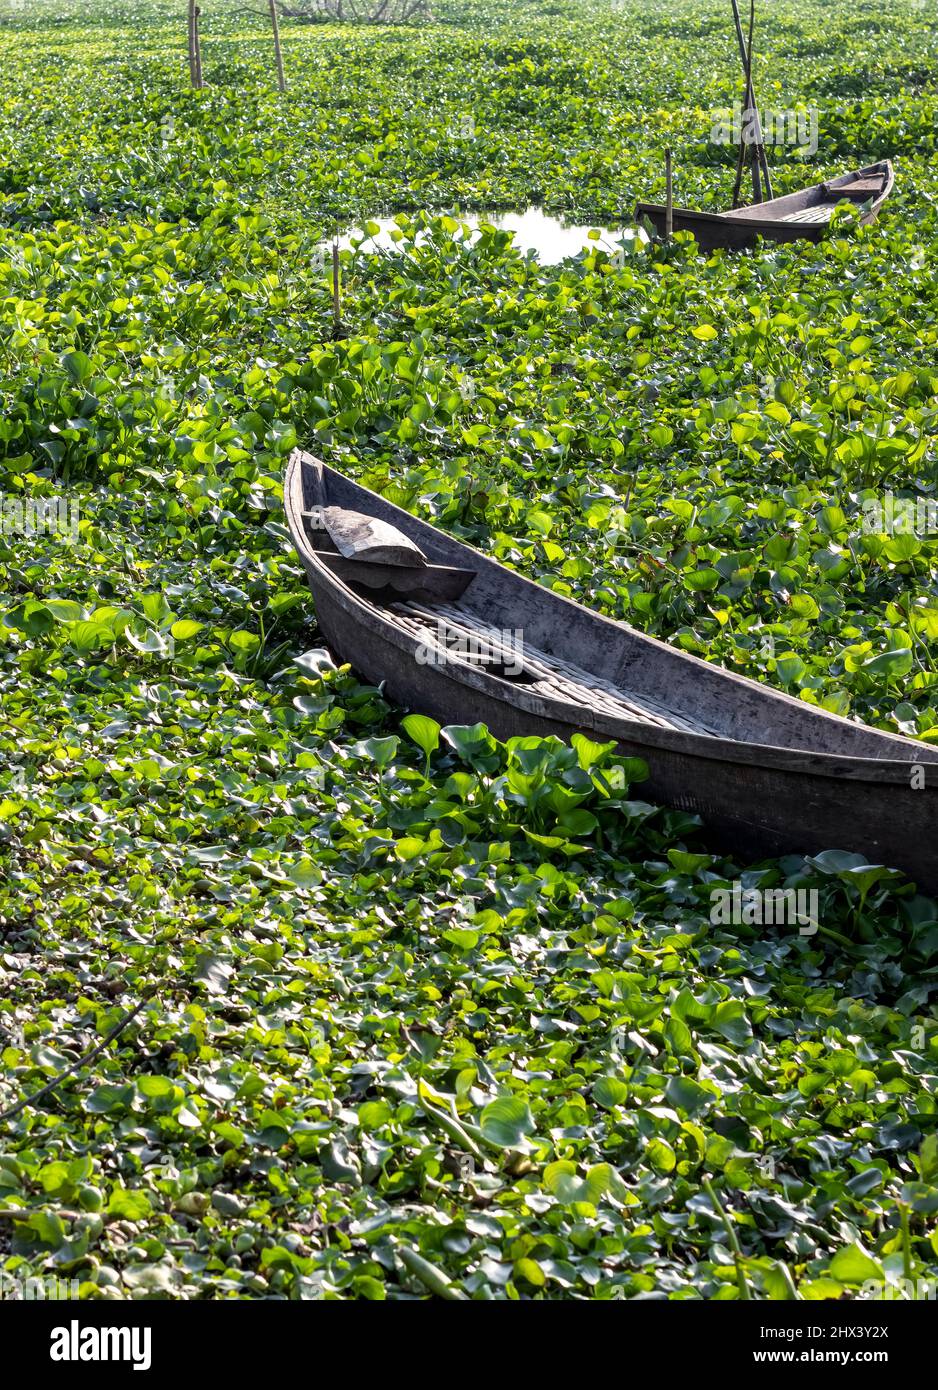 Ancien bateau en bois abandonné stationné sur une rive couverte de jacinthe d'eau Banque D'Images